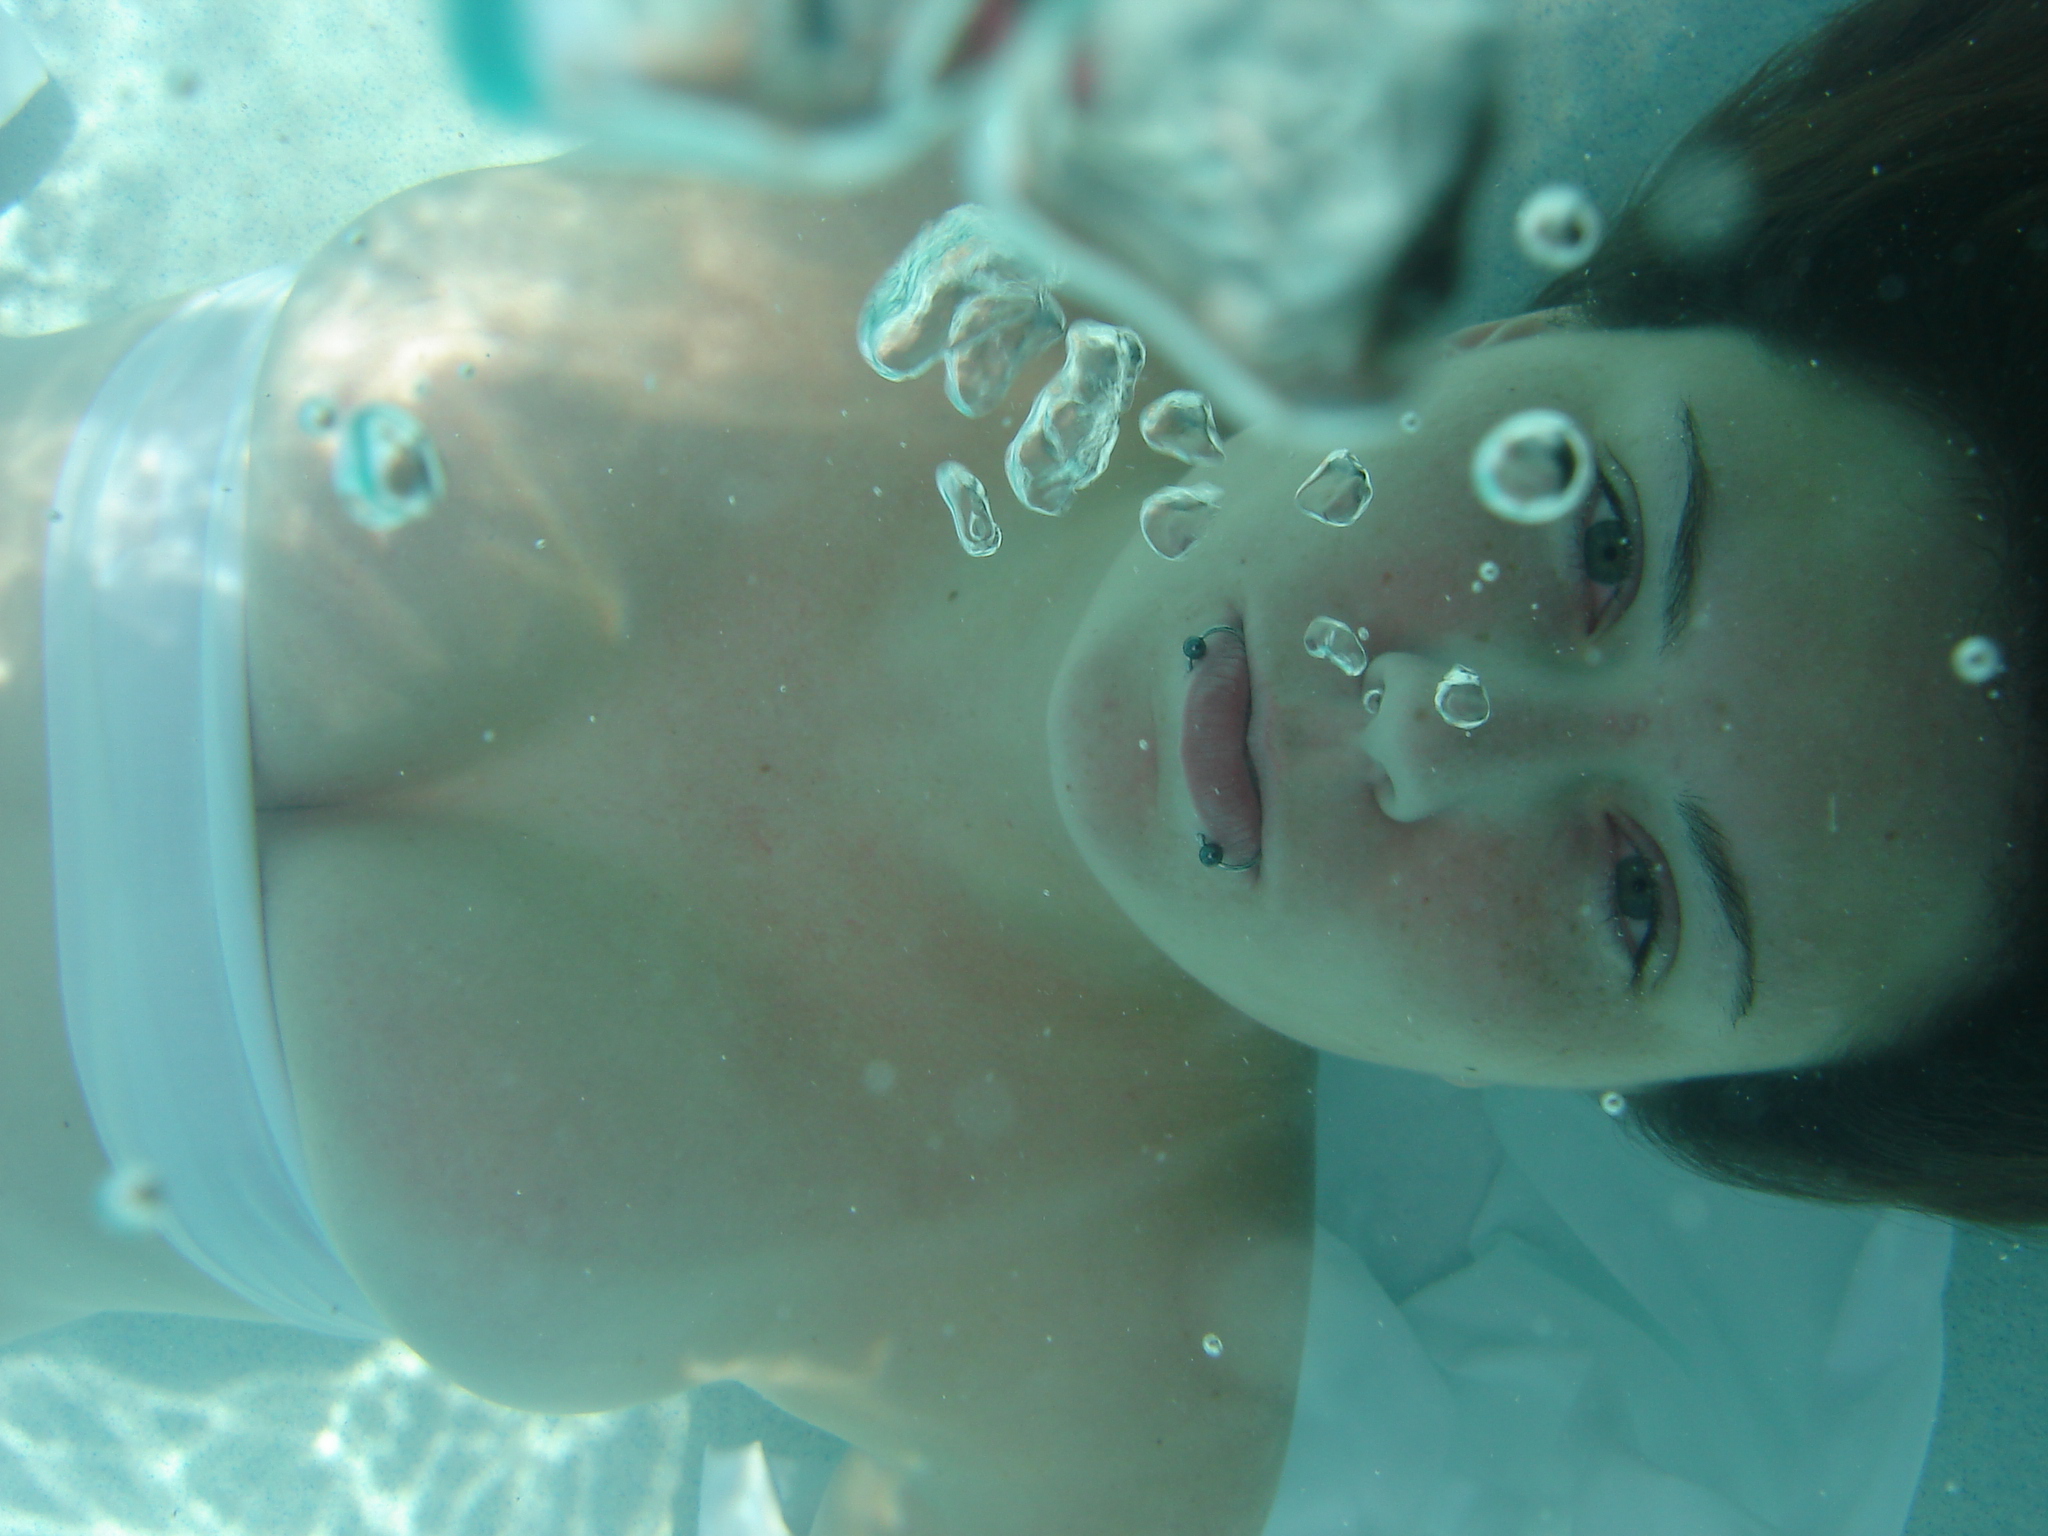 Underwater 10